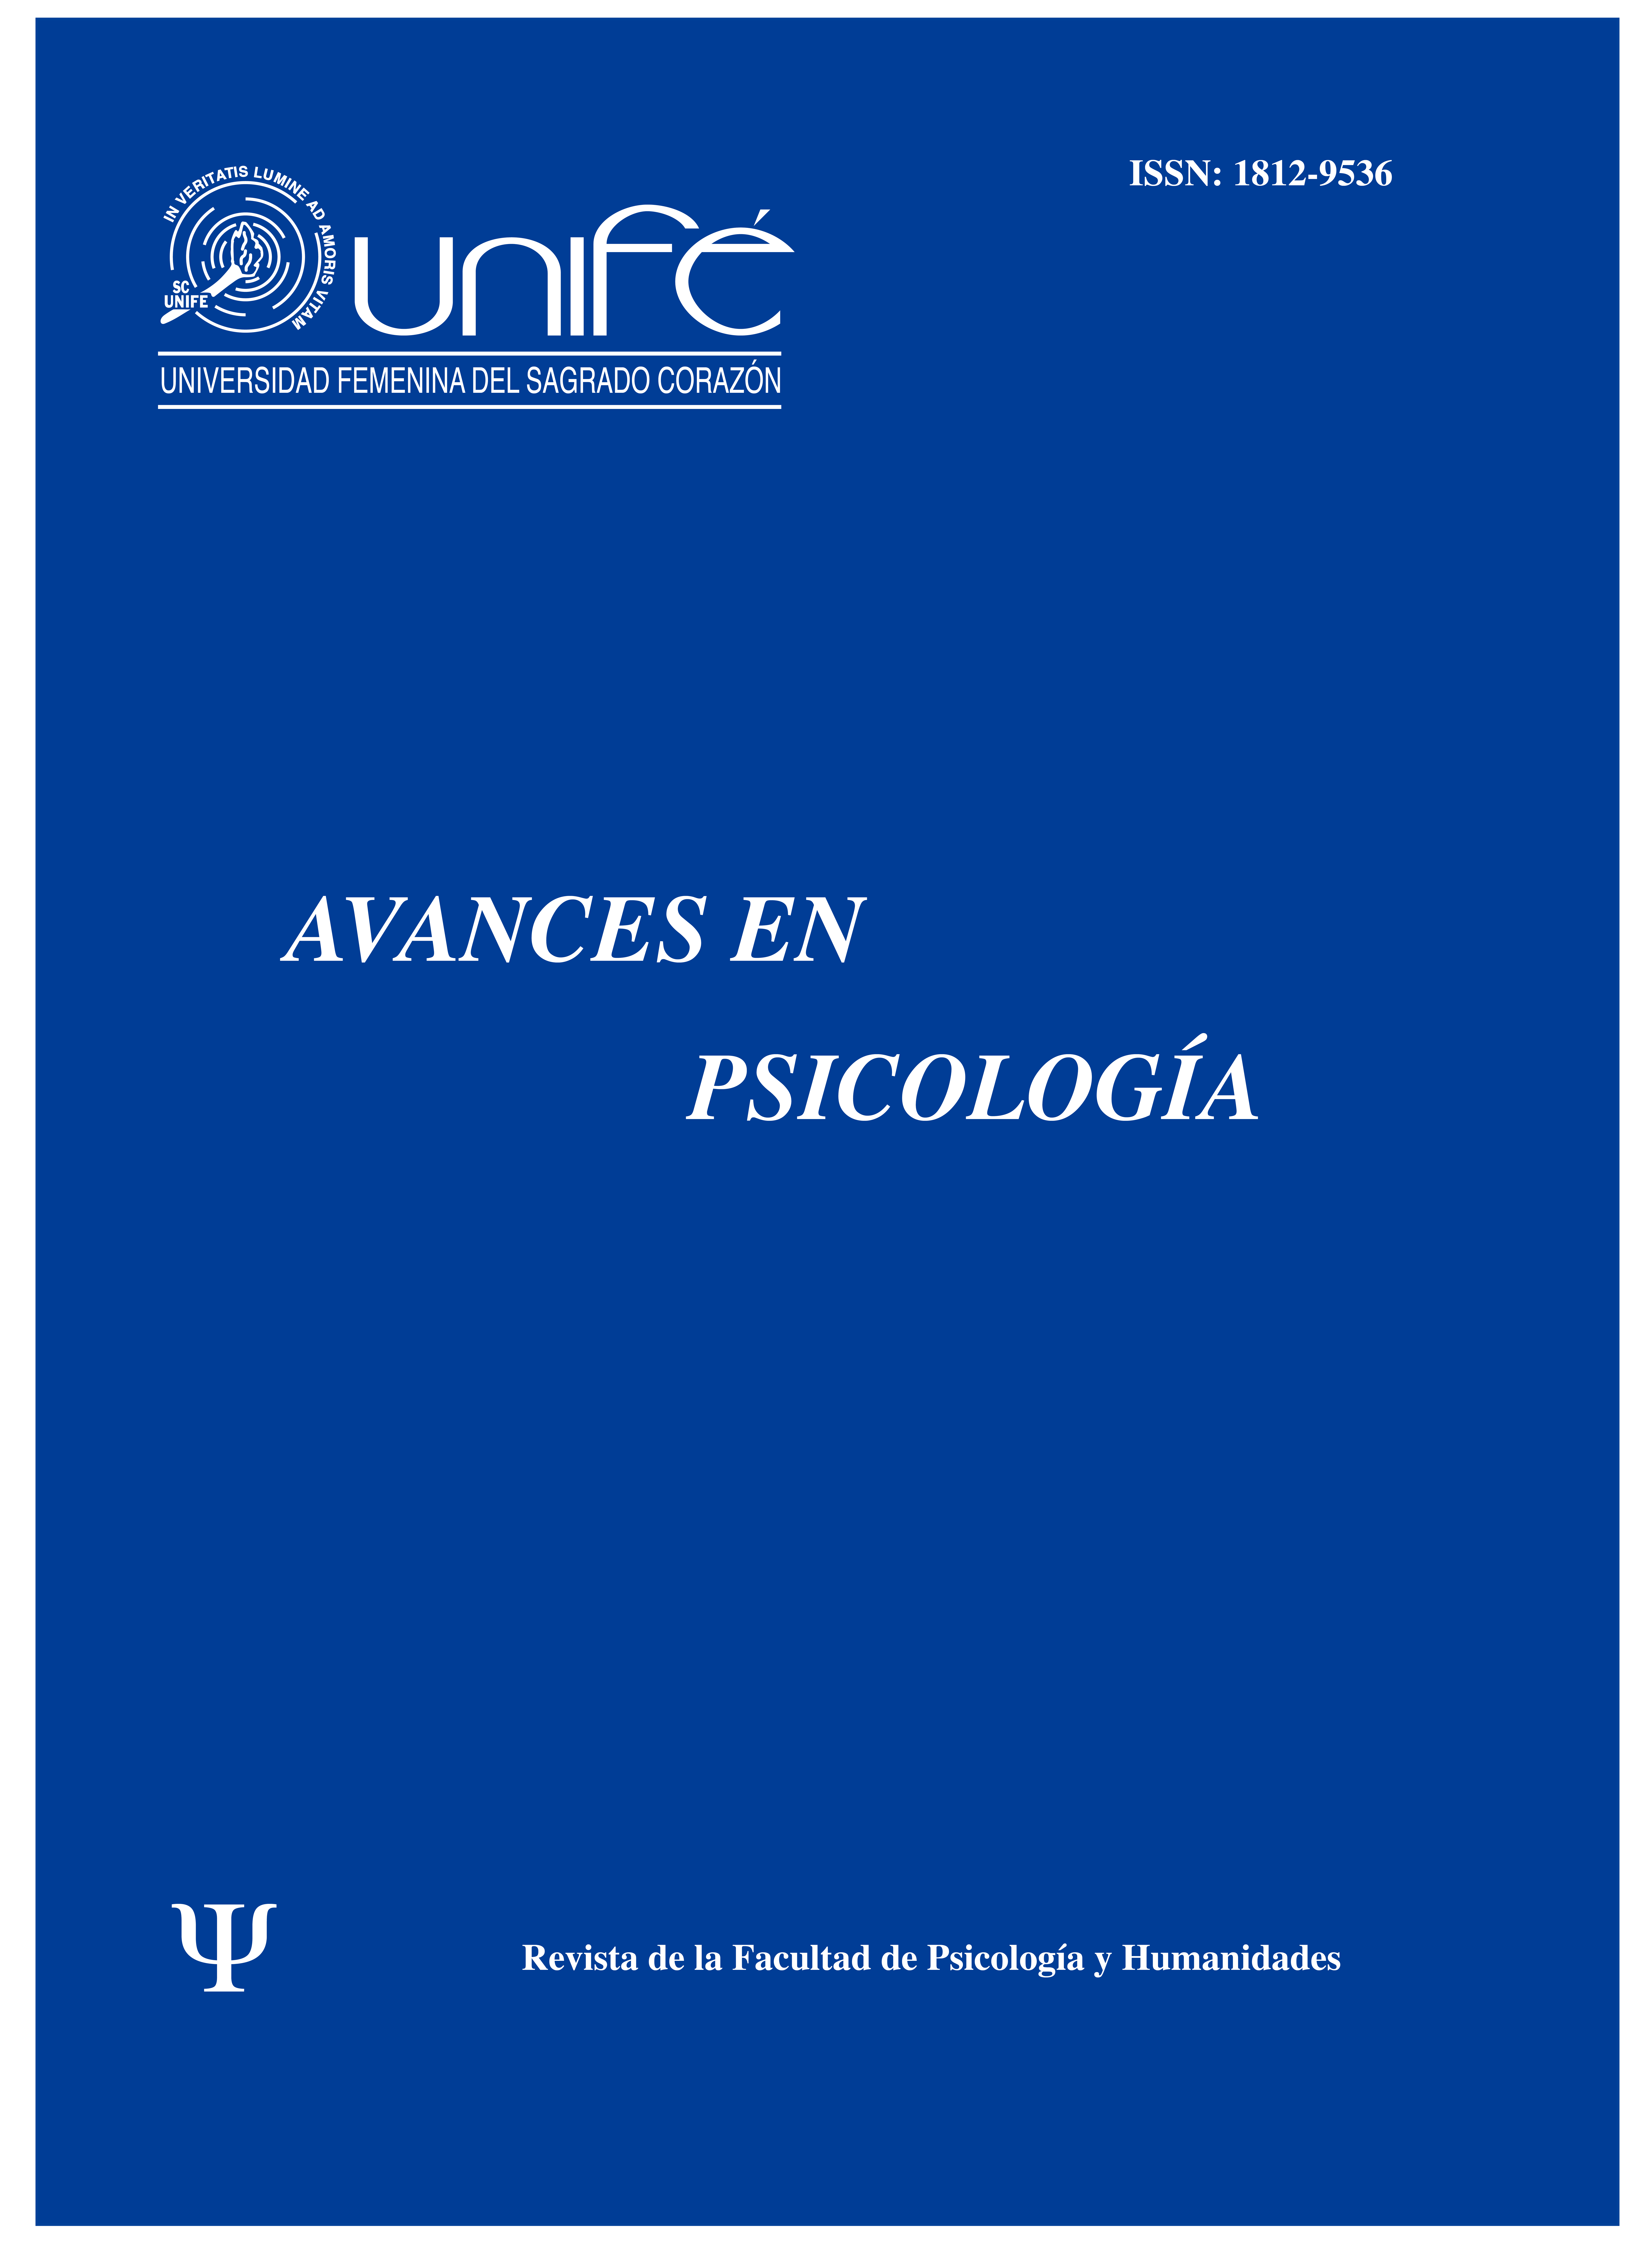 					Ver Vol. 27 Núm. 2 (2019): Avances en Psicología: Revista de la Facultad de Psicología y Humanidades
				